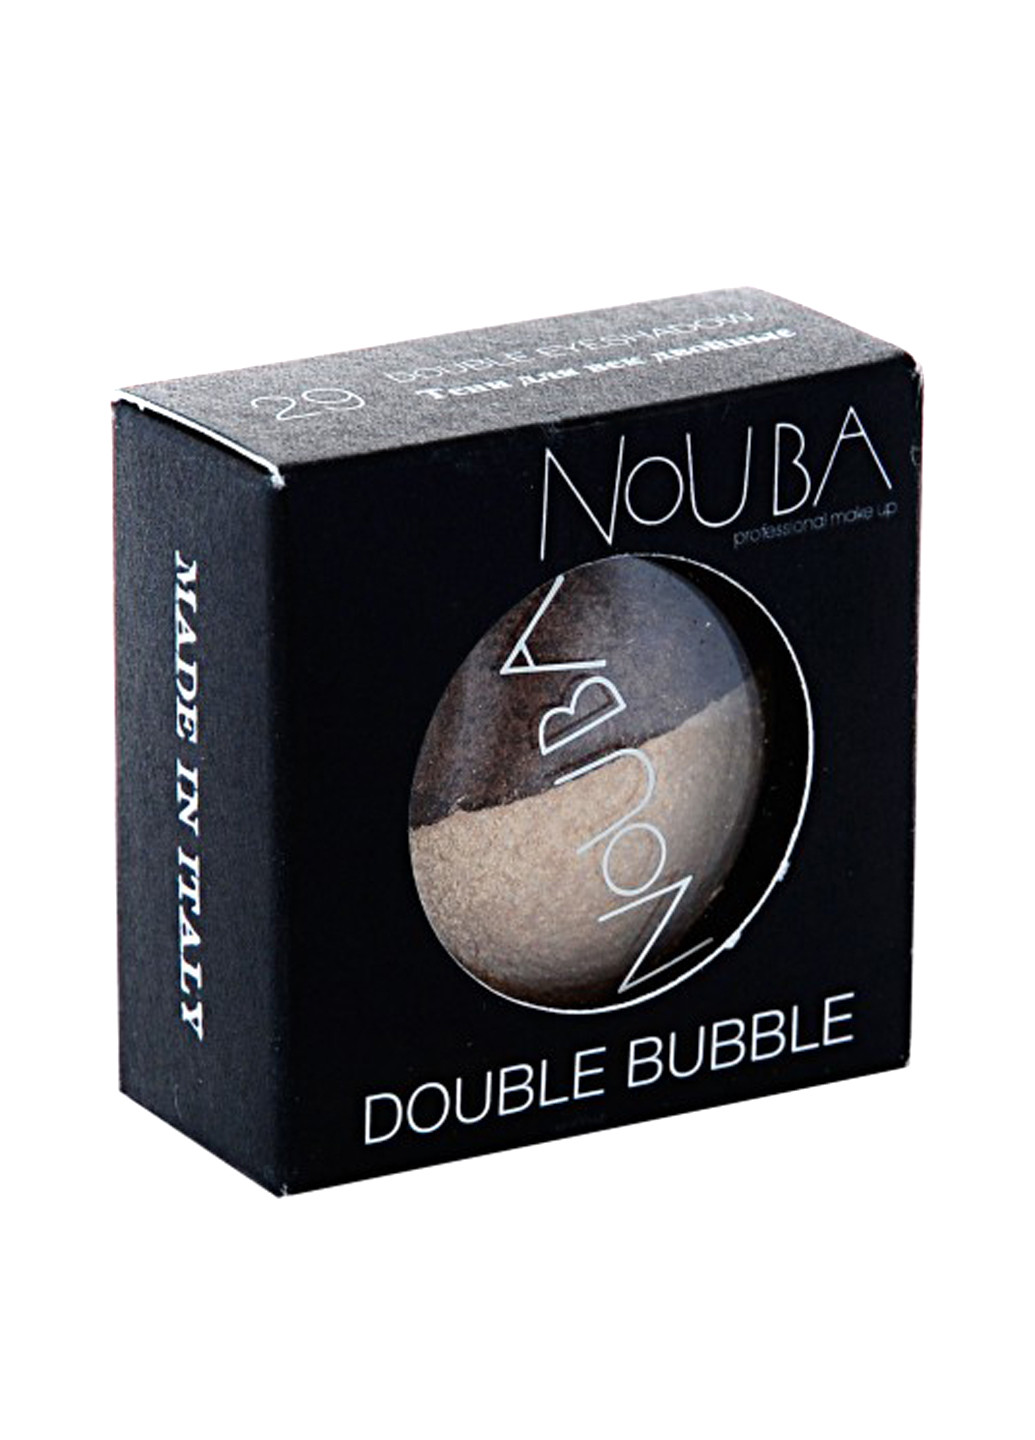 Тени для век DUBBLE BUBBLE №29, 2 г (тестер) NoUBA (17054499)